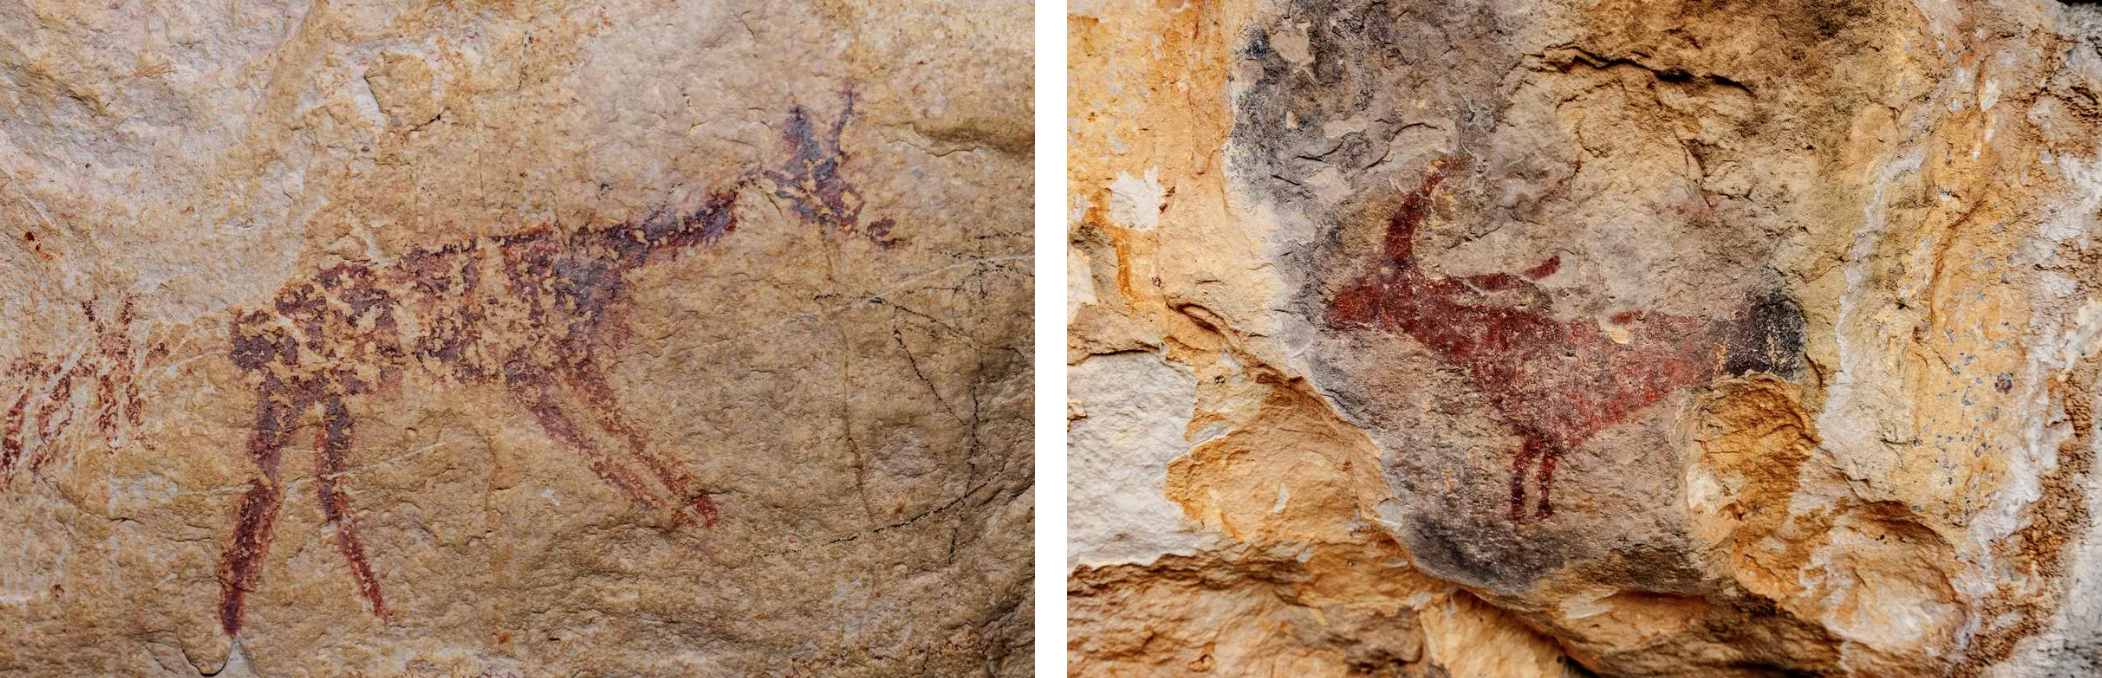 Detall d'una de les pintures dels Vilars, una petita balma a Os de Balaguer (esquerra) i detall rupestre a les muntanyes de Prades (dreta) QUIM ROSER / DEPARTAMENT DE CULTURA 